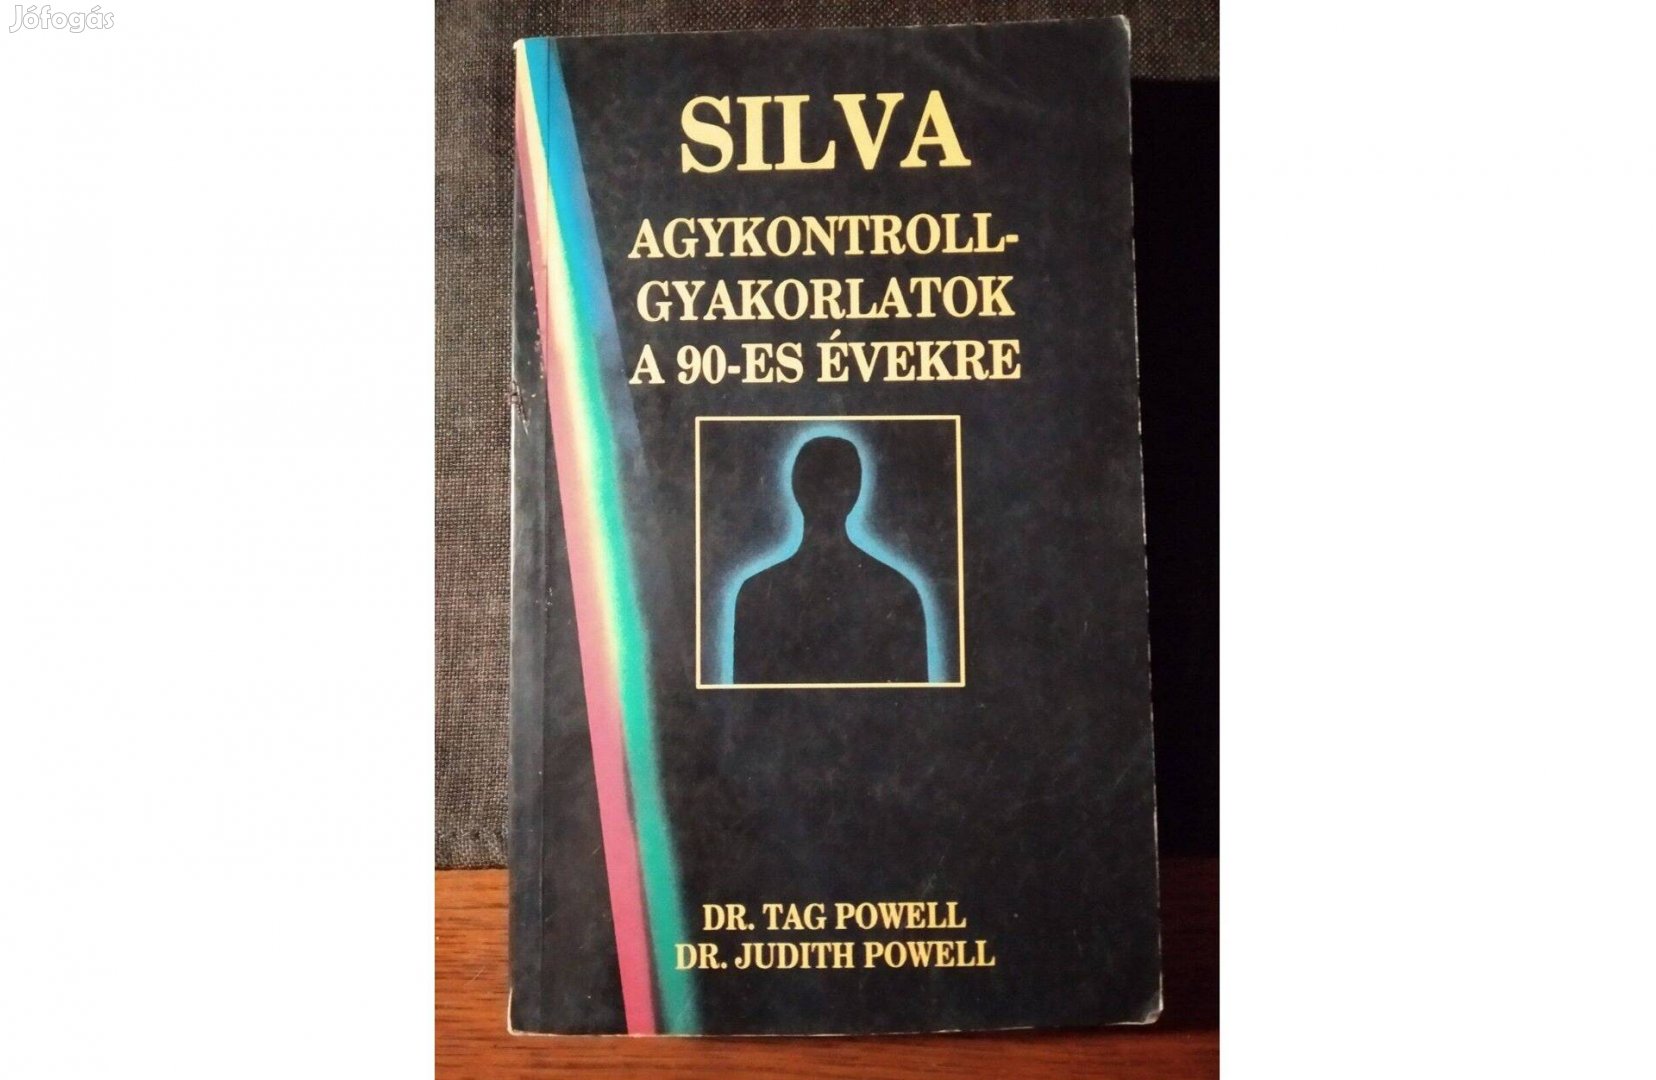 Silva agykontroll-gyakorlatok a 90-es évekre Dr.Tag Powell,Dr.Judit